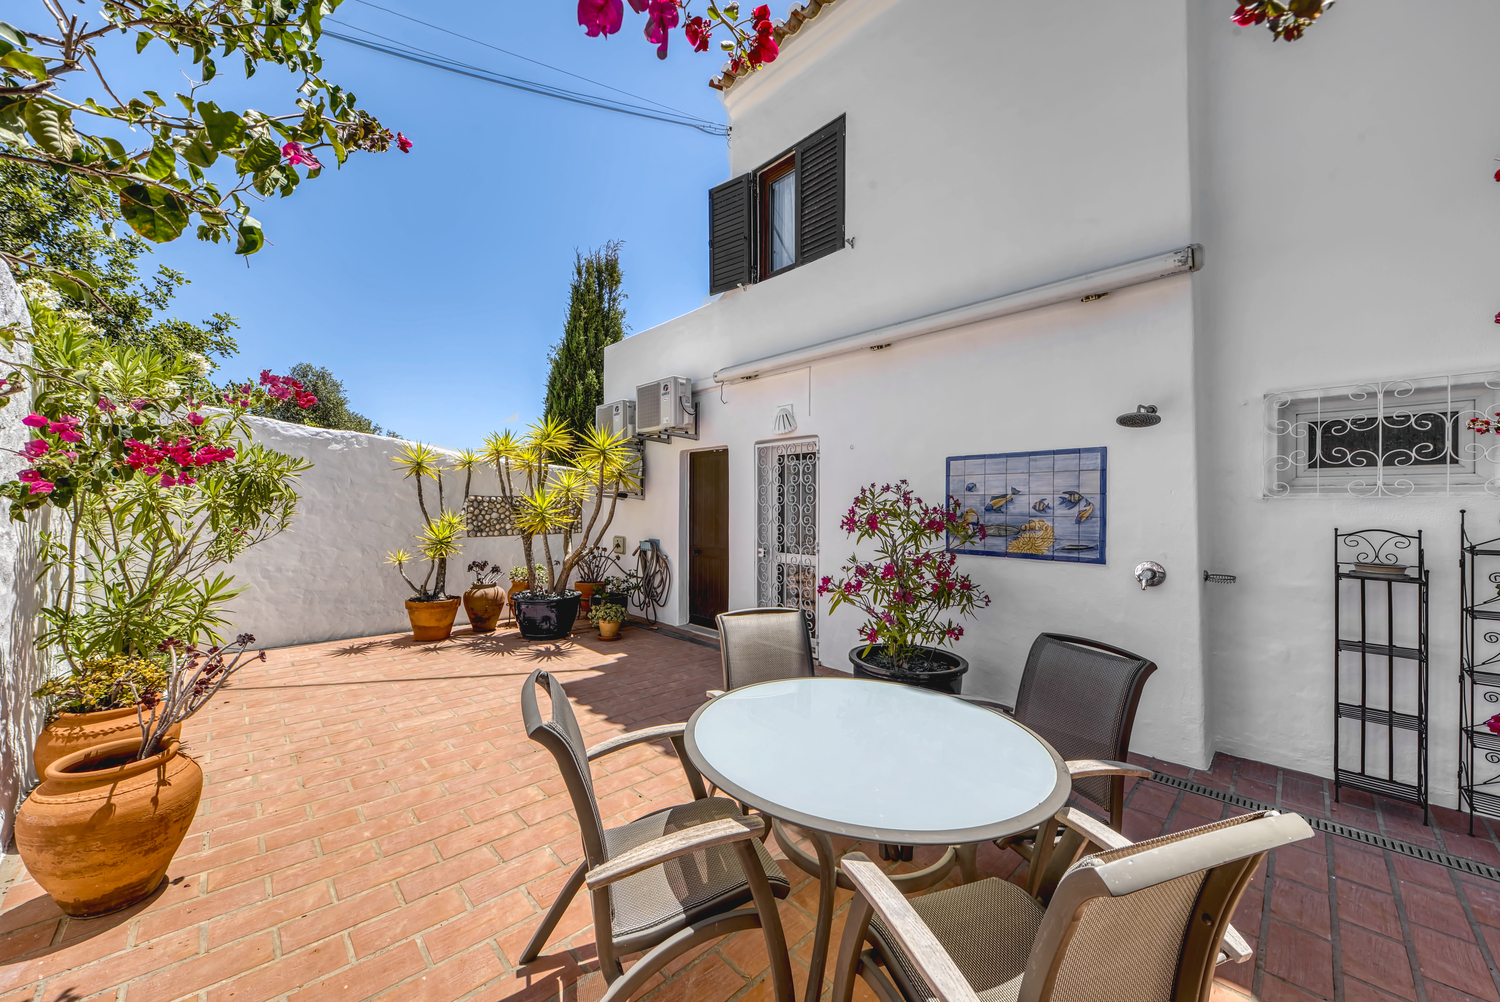 Casa Ocean View - BOAZ Rentals - Rent a Villa Algarve